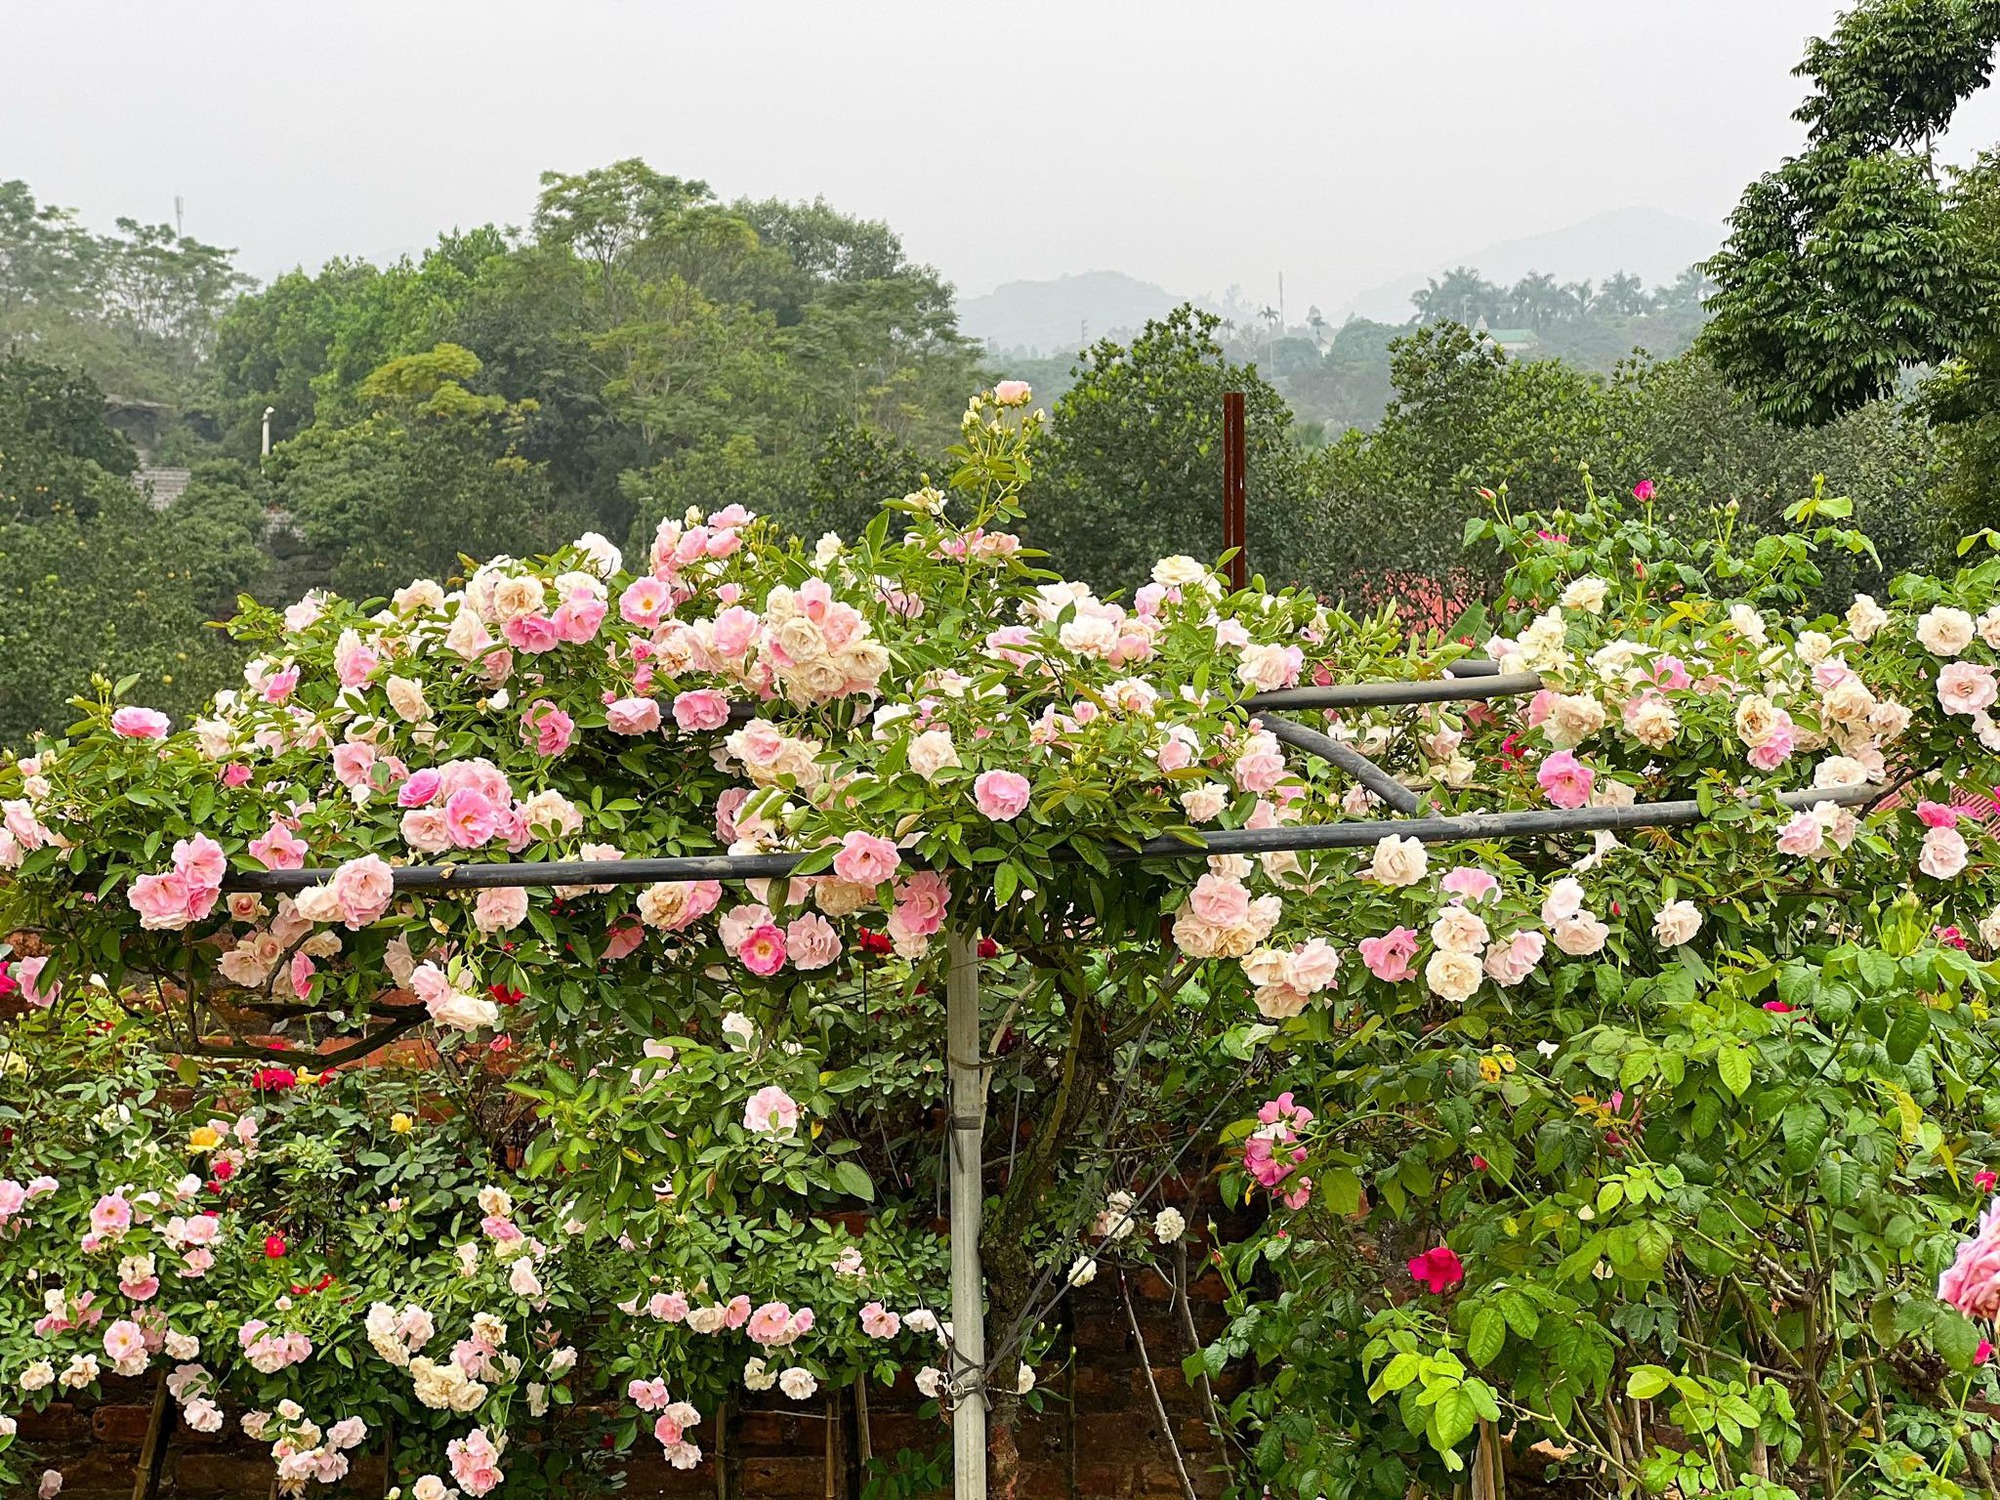 Mùng 3 Tết đến thăm vườn hồng rộng 6.000m² của người phụ nữ Hà Nội - Ảnh 6.